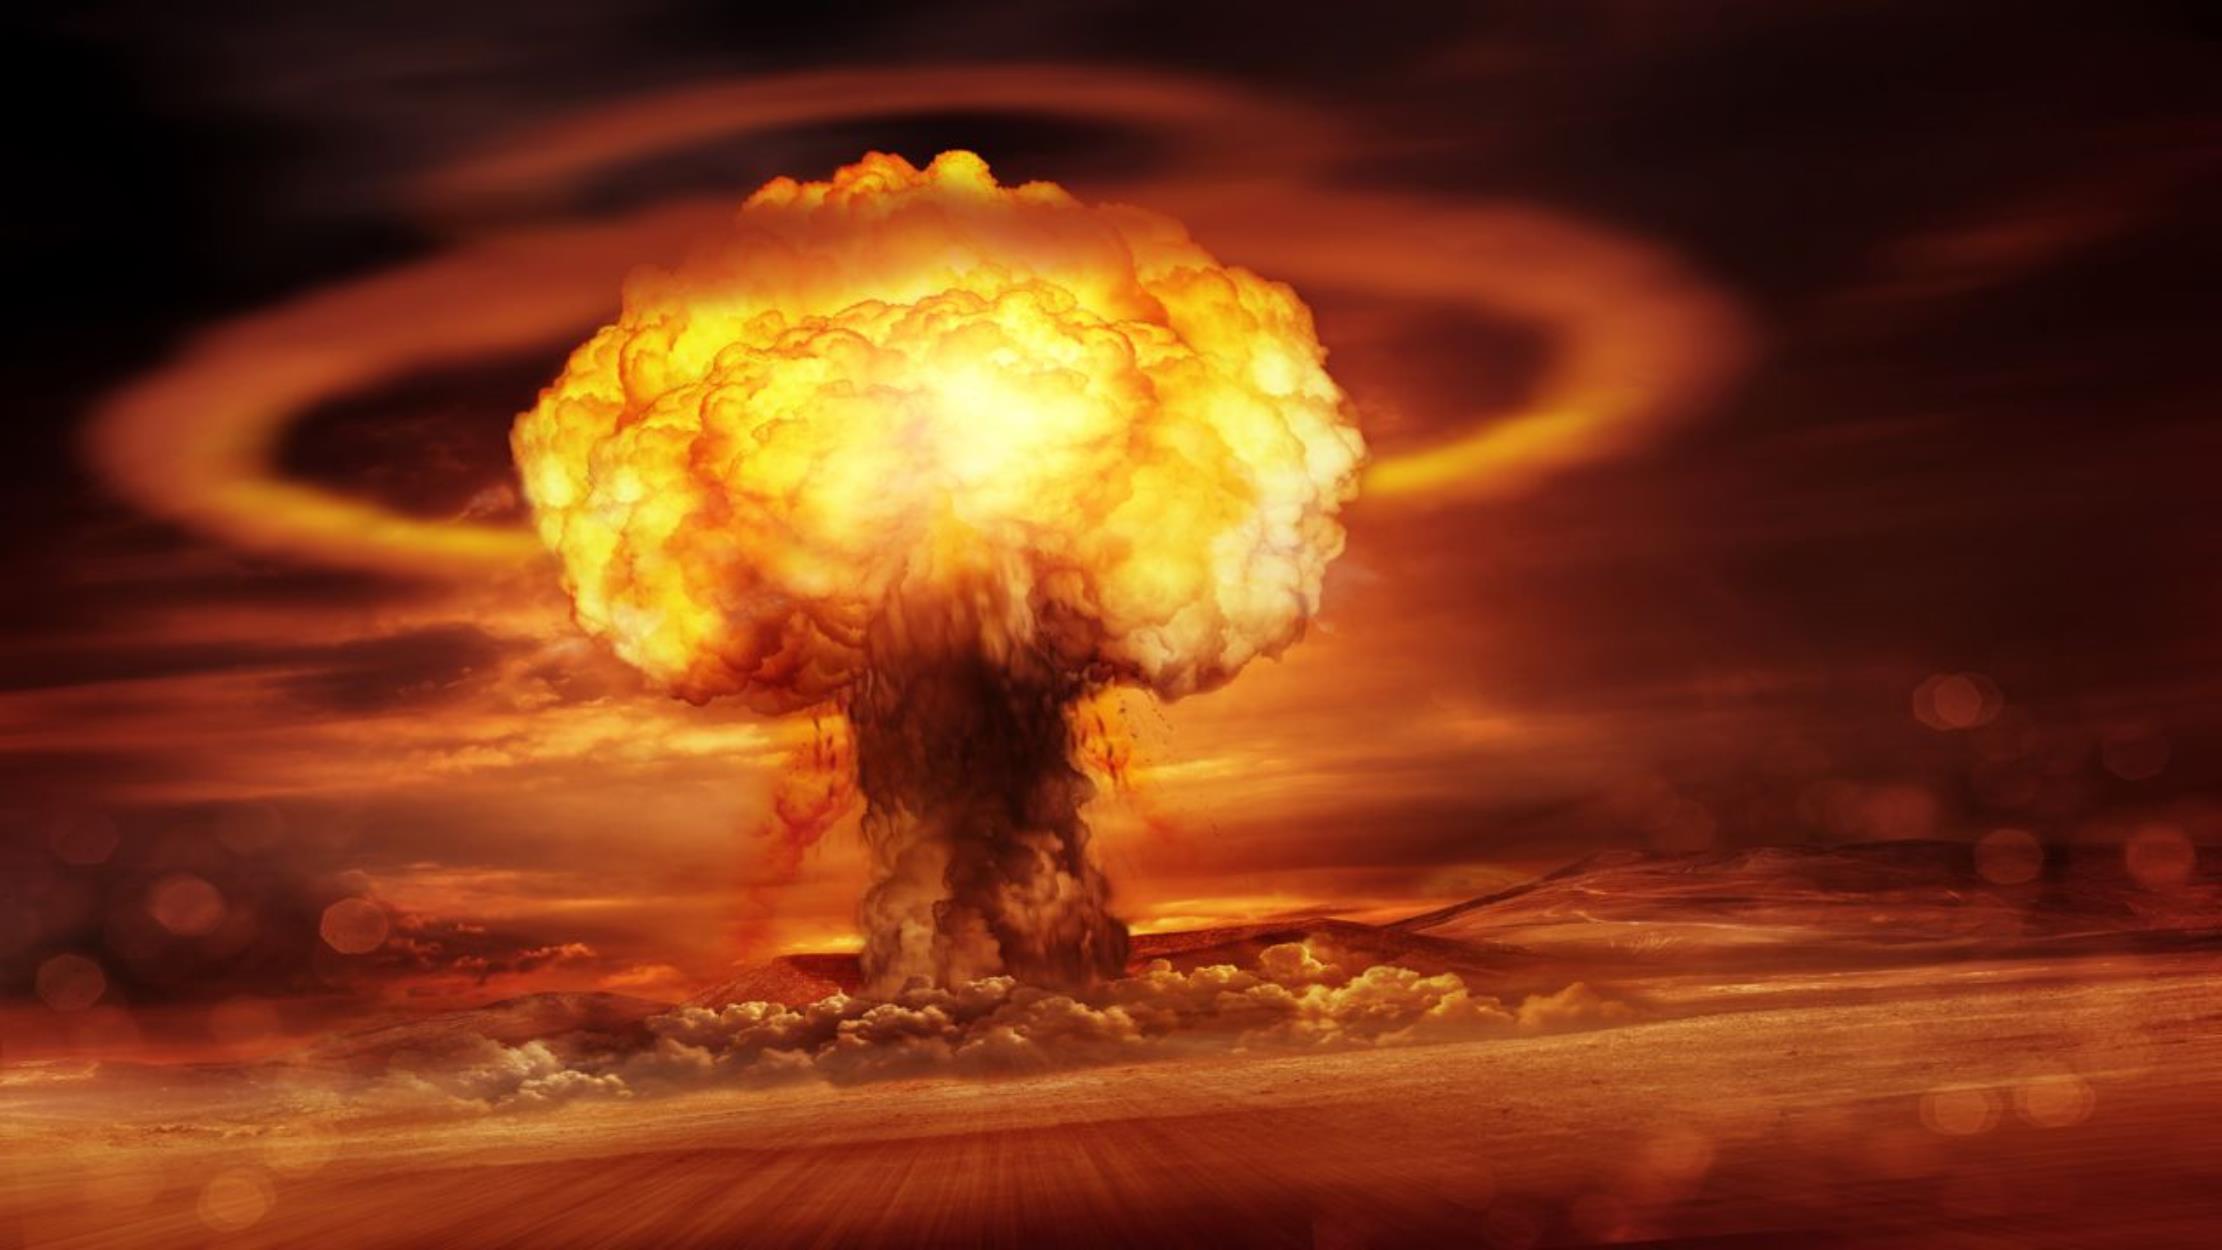 Έχετε αναρωτηθεί; – Αυτές θα ήταν οι επιπτώσεις ενός πυρηνικού πολέμου στην ατμόσφαιρα της Γης